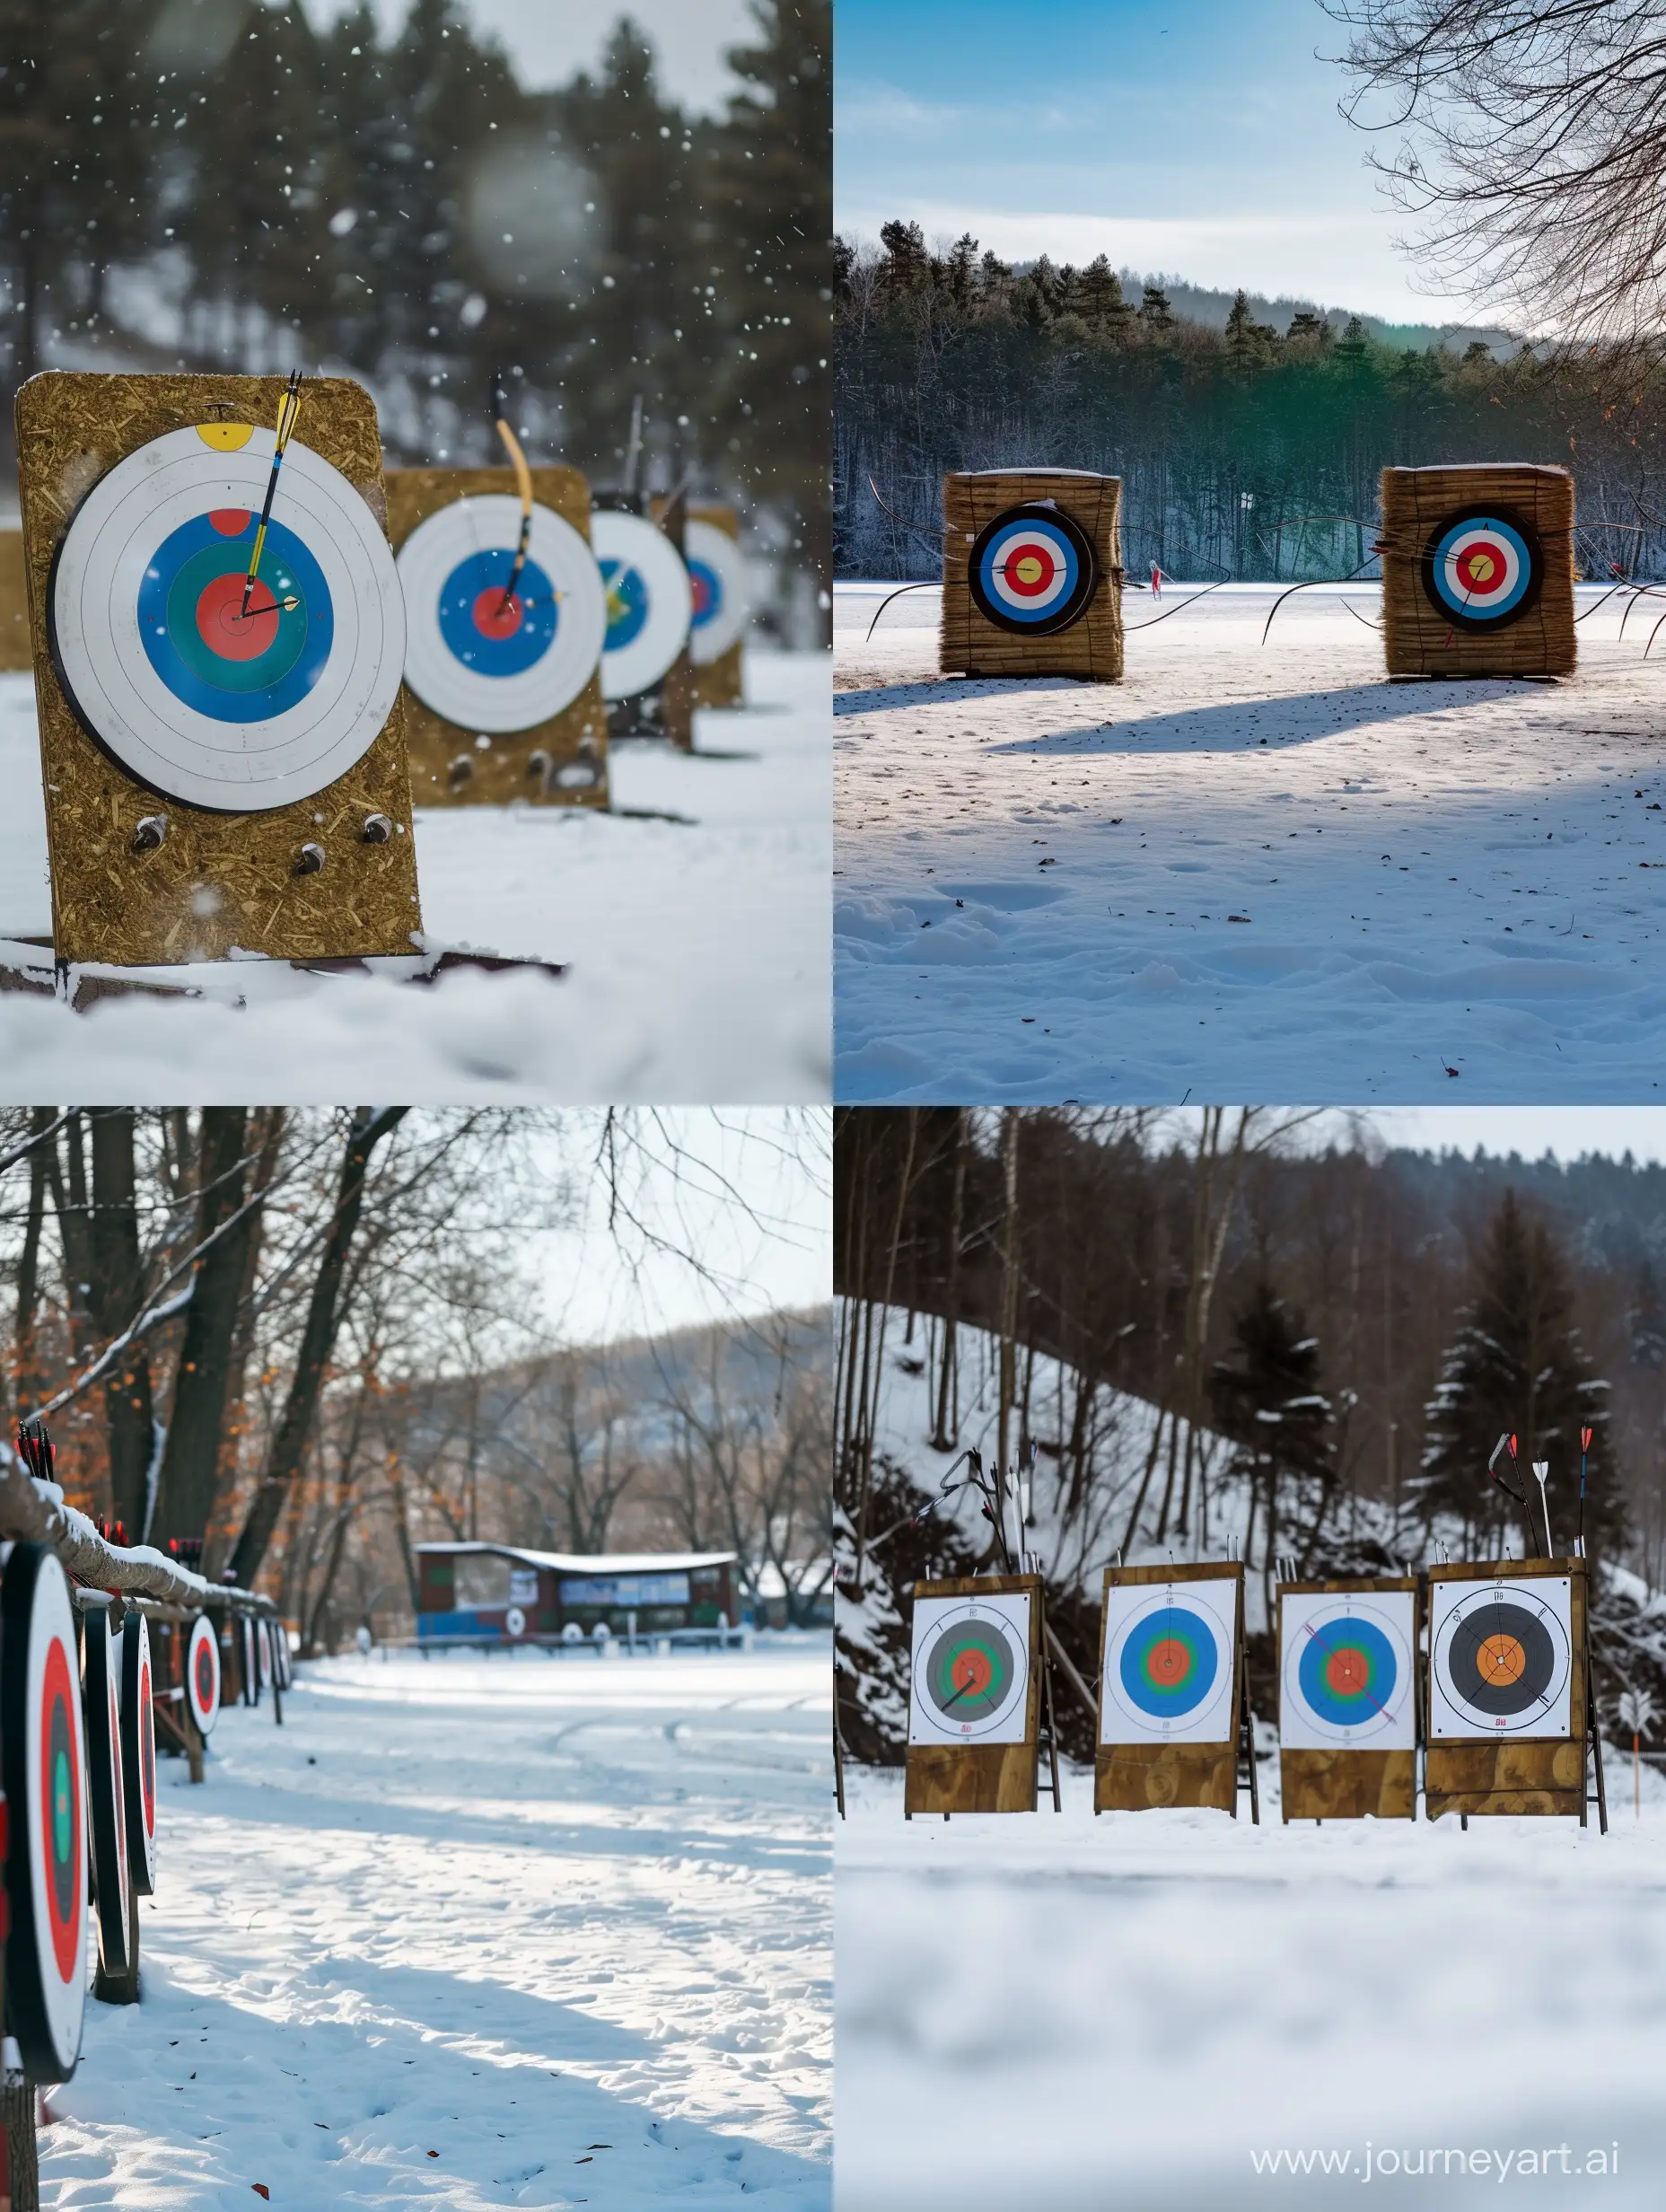 Winter-Archery-Range-Chilled-Precision-in-34-Aspect-Ratio